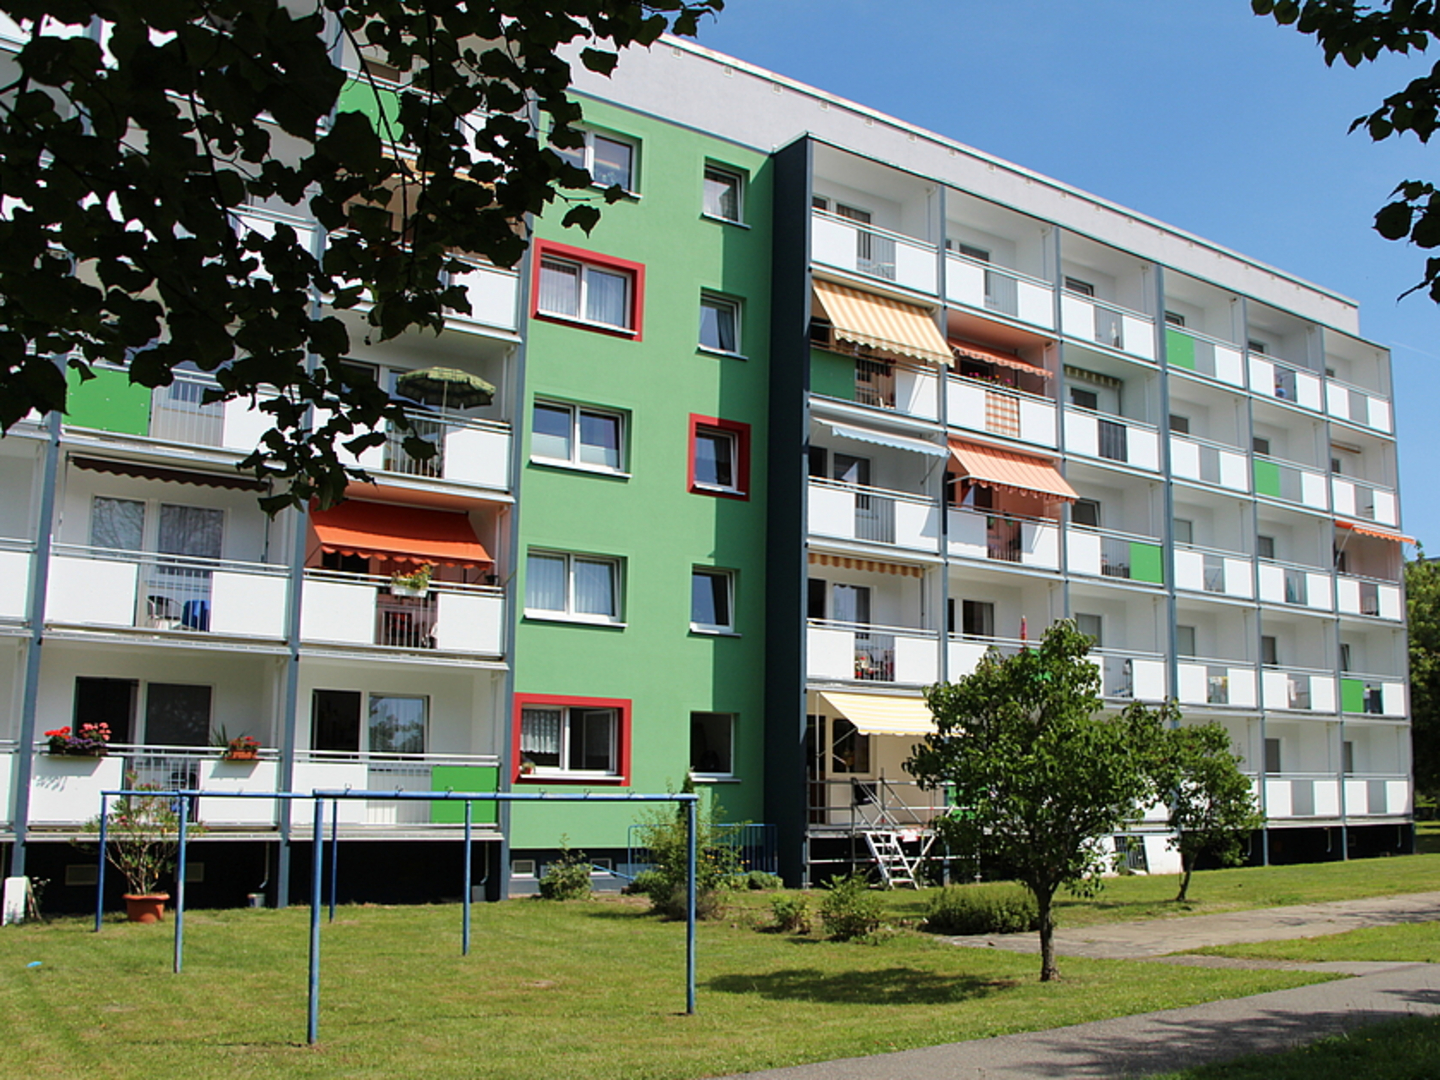 In Döbeln Nord haben wir viele Wohnungen seniorengerecht saniert. Barrierefrei und mit Tagespflege.